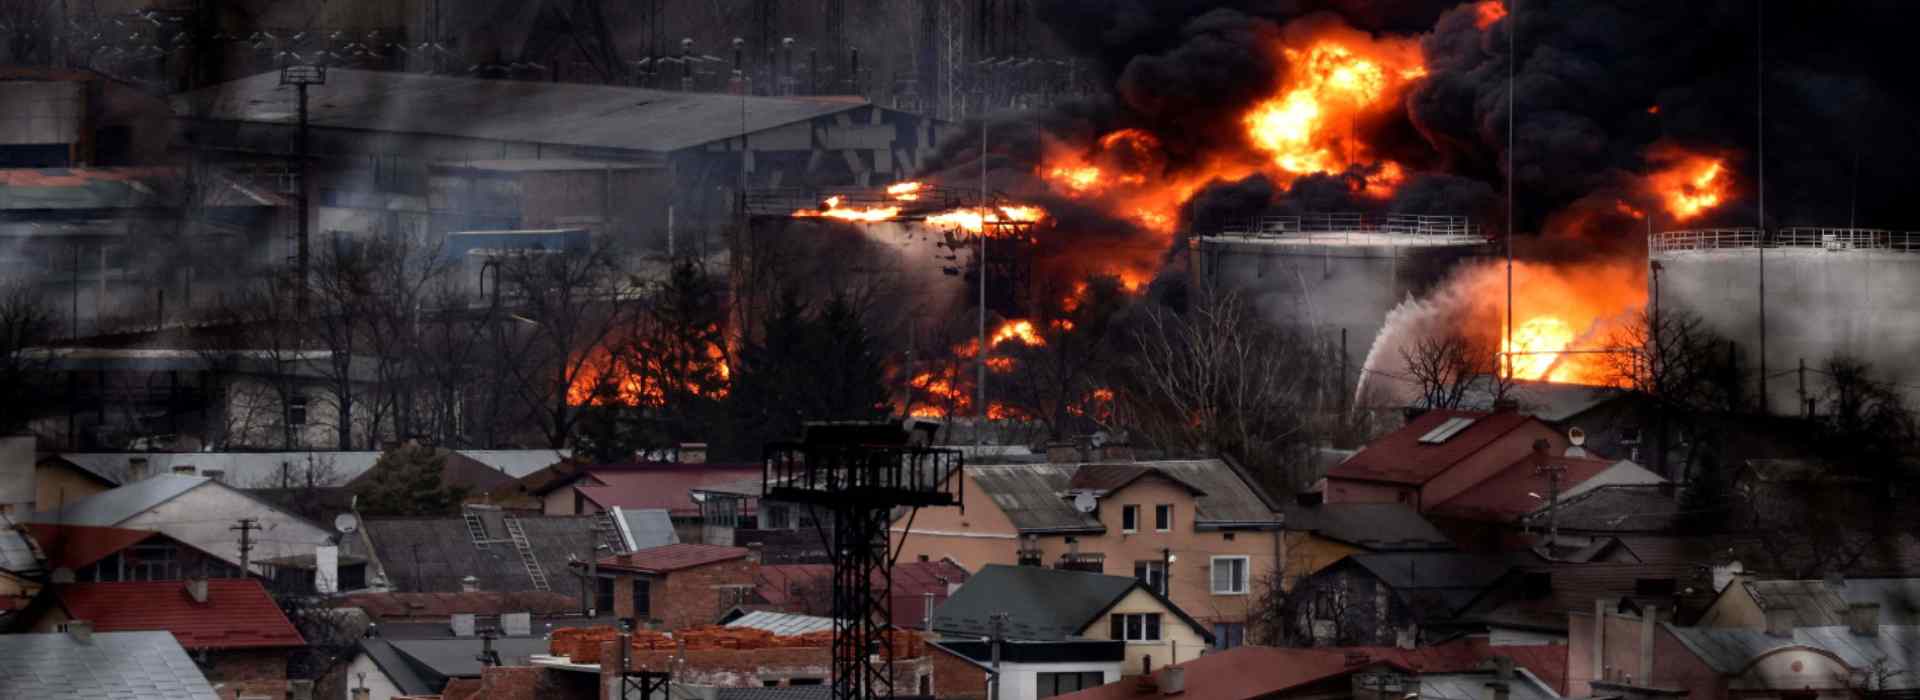 Guerra in Ucraina, negoziatore russo: la riduzione dell'escalation intorno a Kiev e Chernihiv "non è un cessate il fuoco"